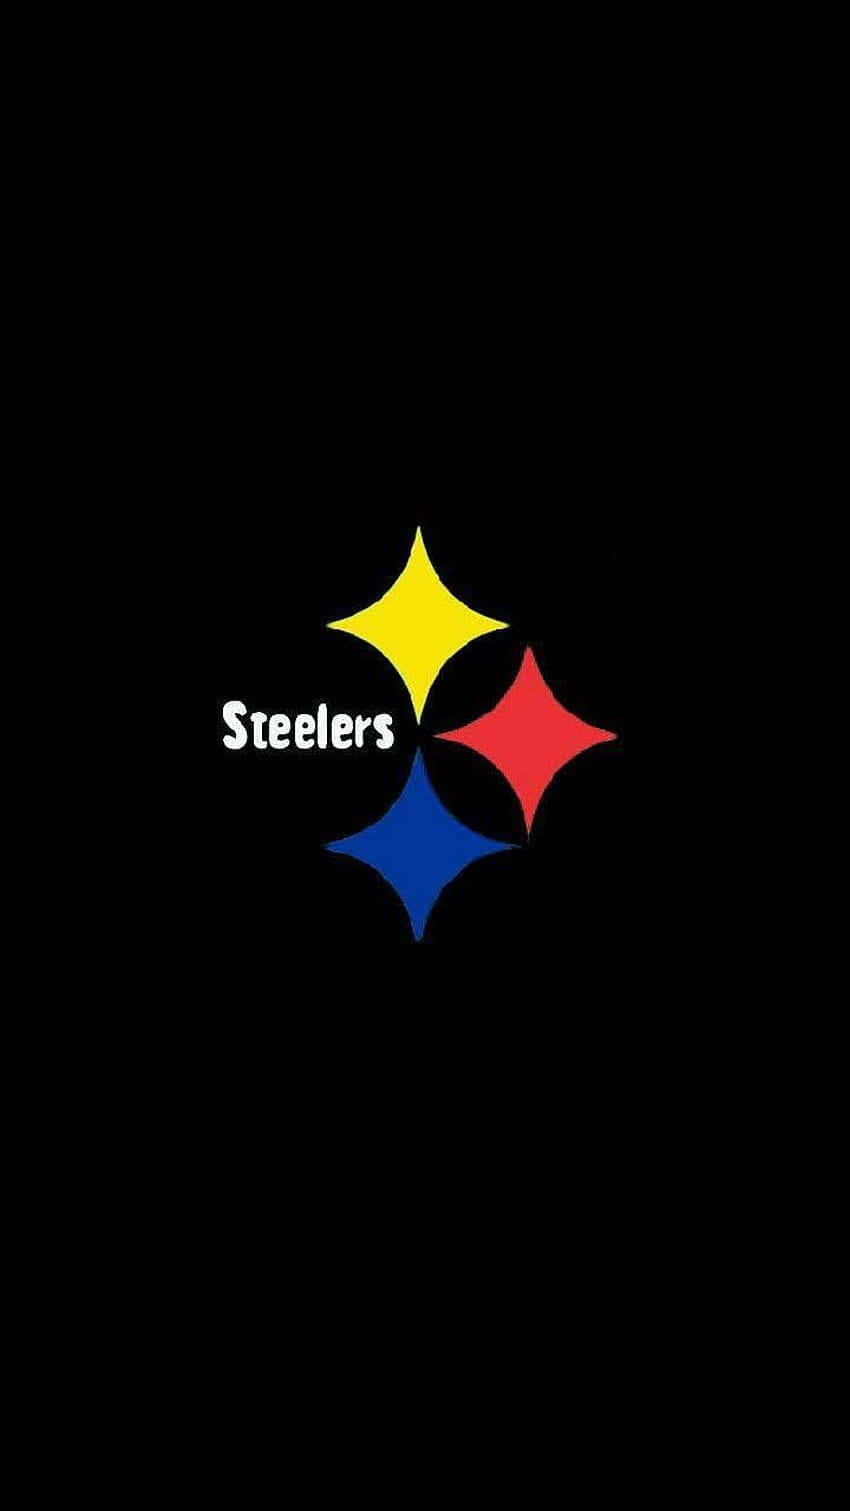 Steelers-logotyp 850 X 1511 Wallpaper